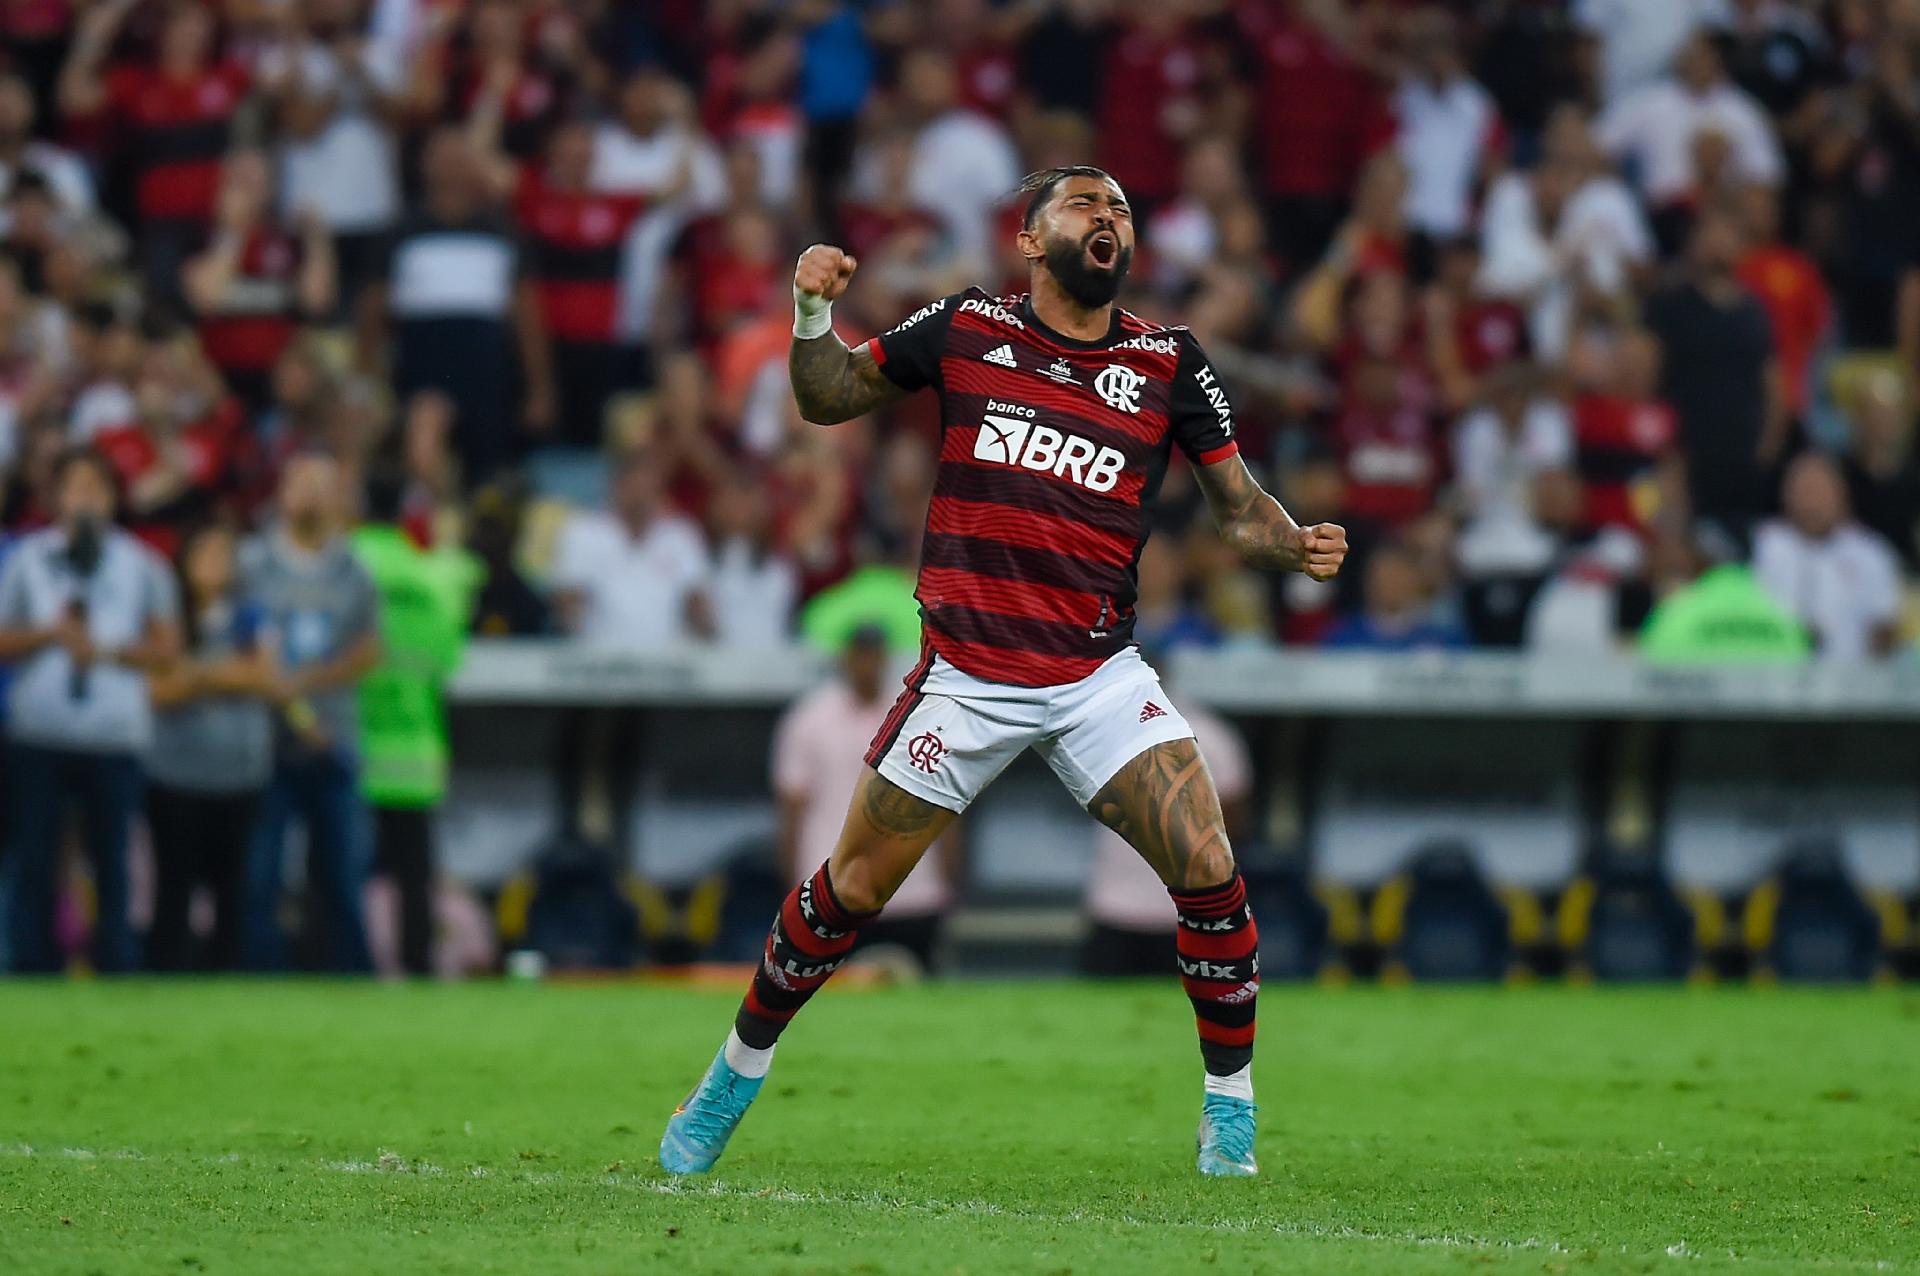 No Flamengo, Gabigol se mantém decisivo com menos jogos que em